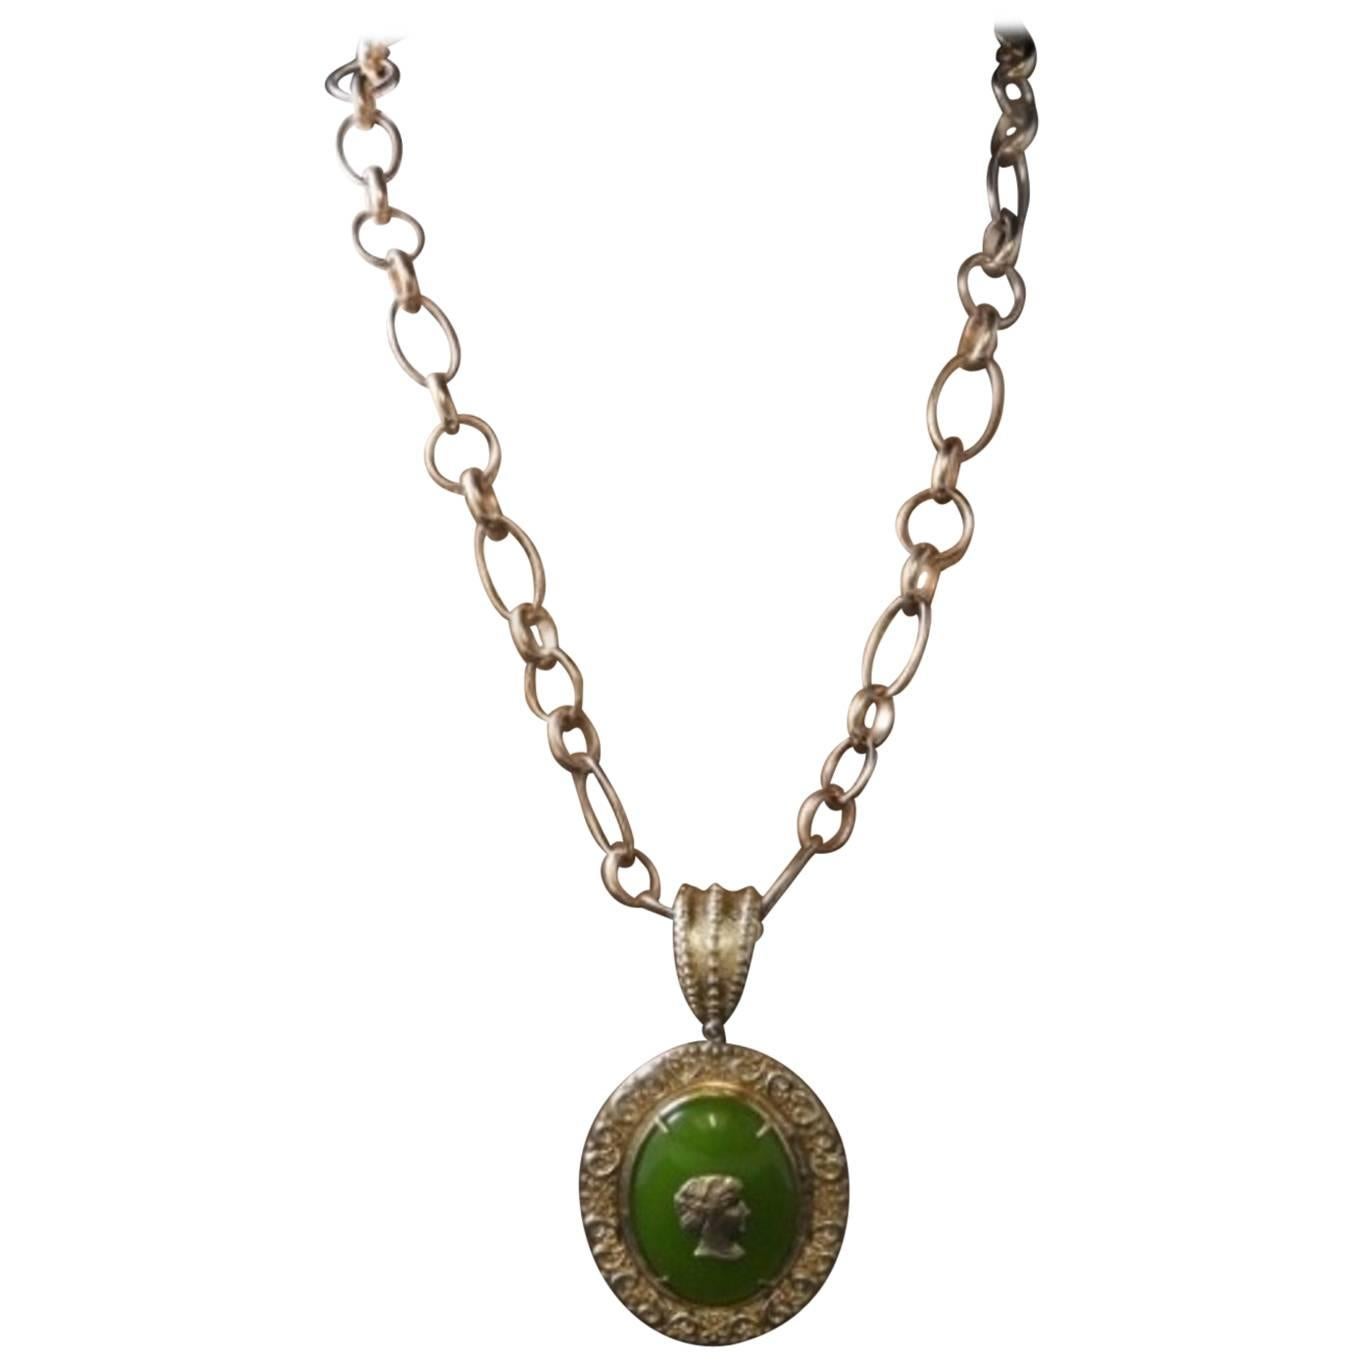 bronze chain and greenpaste glass cabochon pendant by Patrizia Daliana